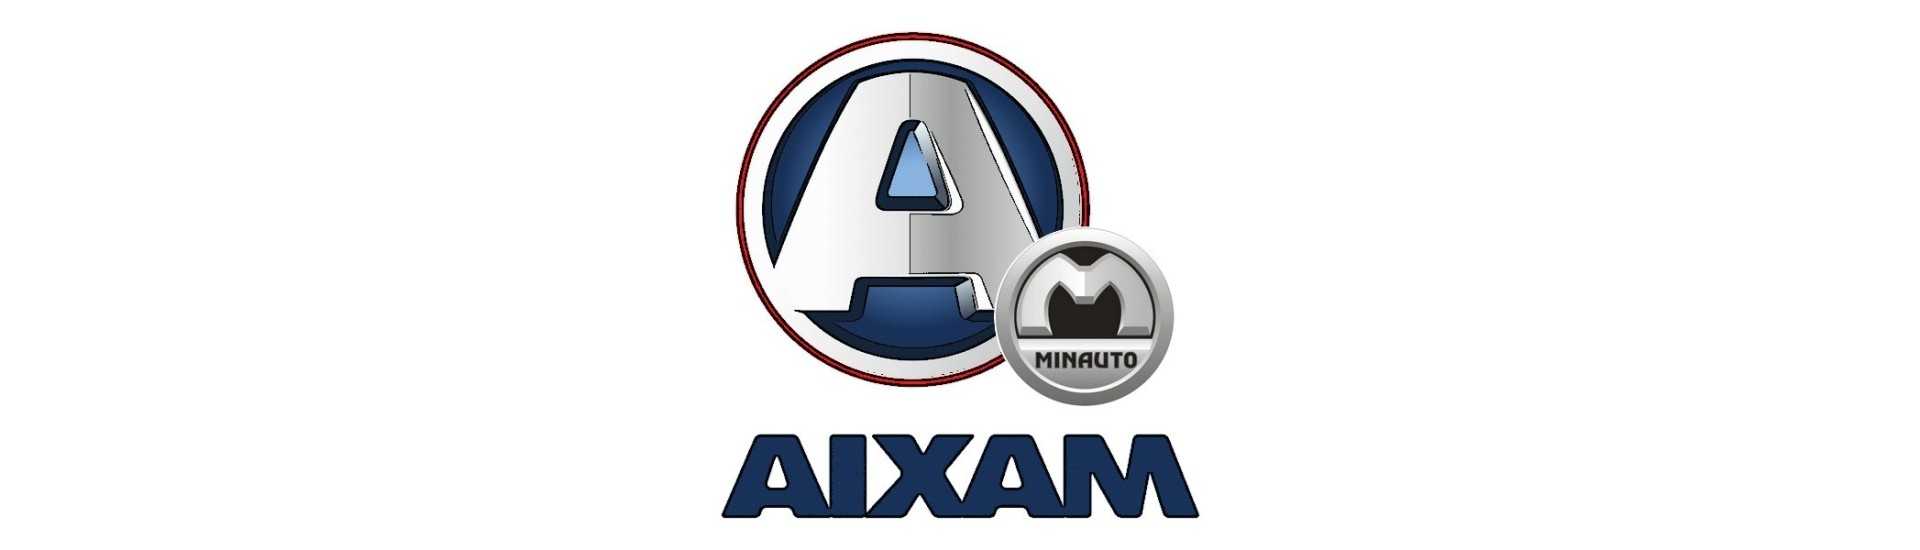 Logo adhésif au meilleur prix pour voiture sans permis Aixam Minauto